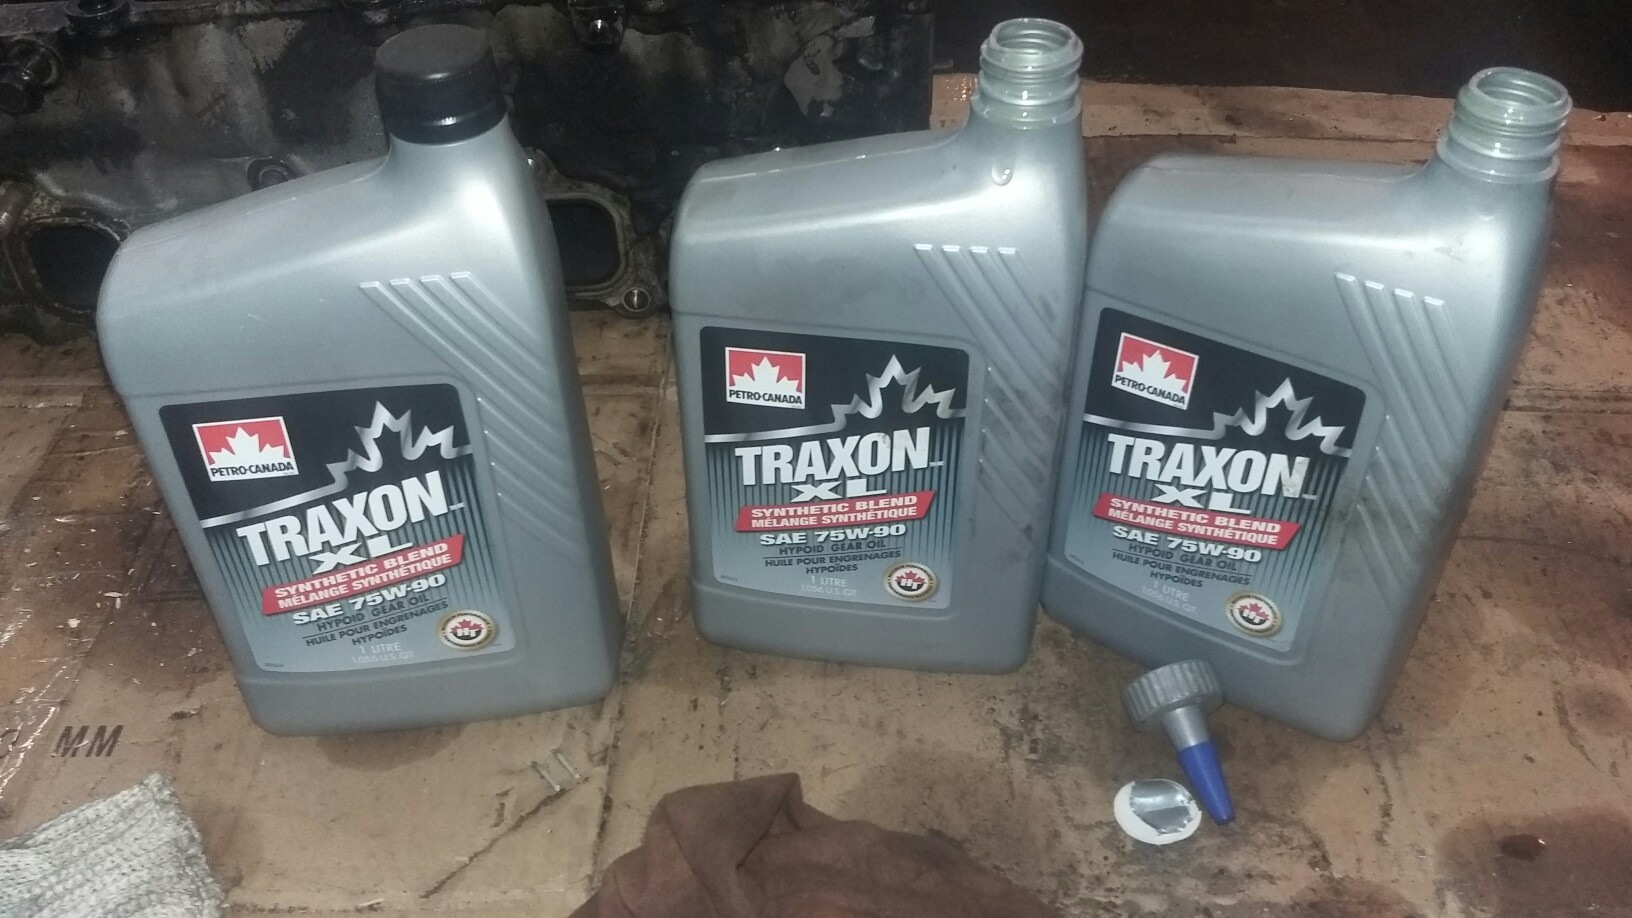 Масло акпп джимни. Isuzu Trooper масло в раздатку. Petro-Canada Traxon Synthetic 75w-90. Petro Canada Traxon XL Synthetic Blend 75w-90 бочка.